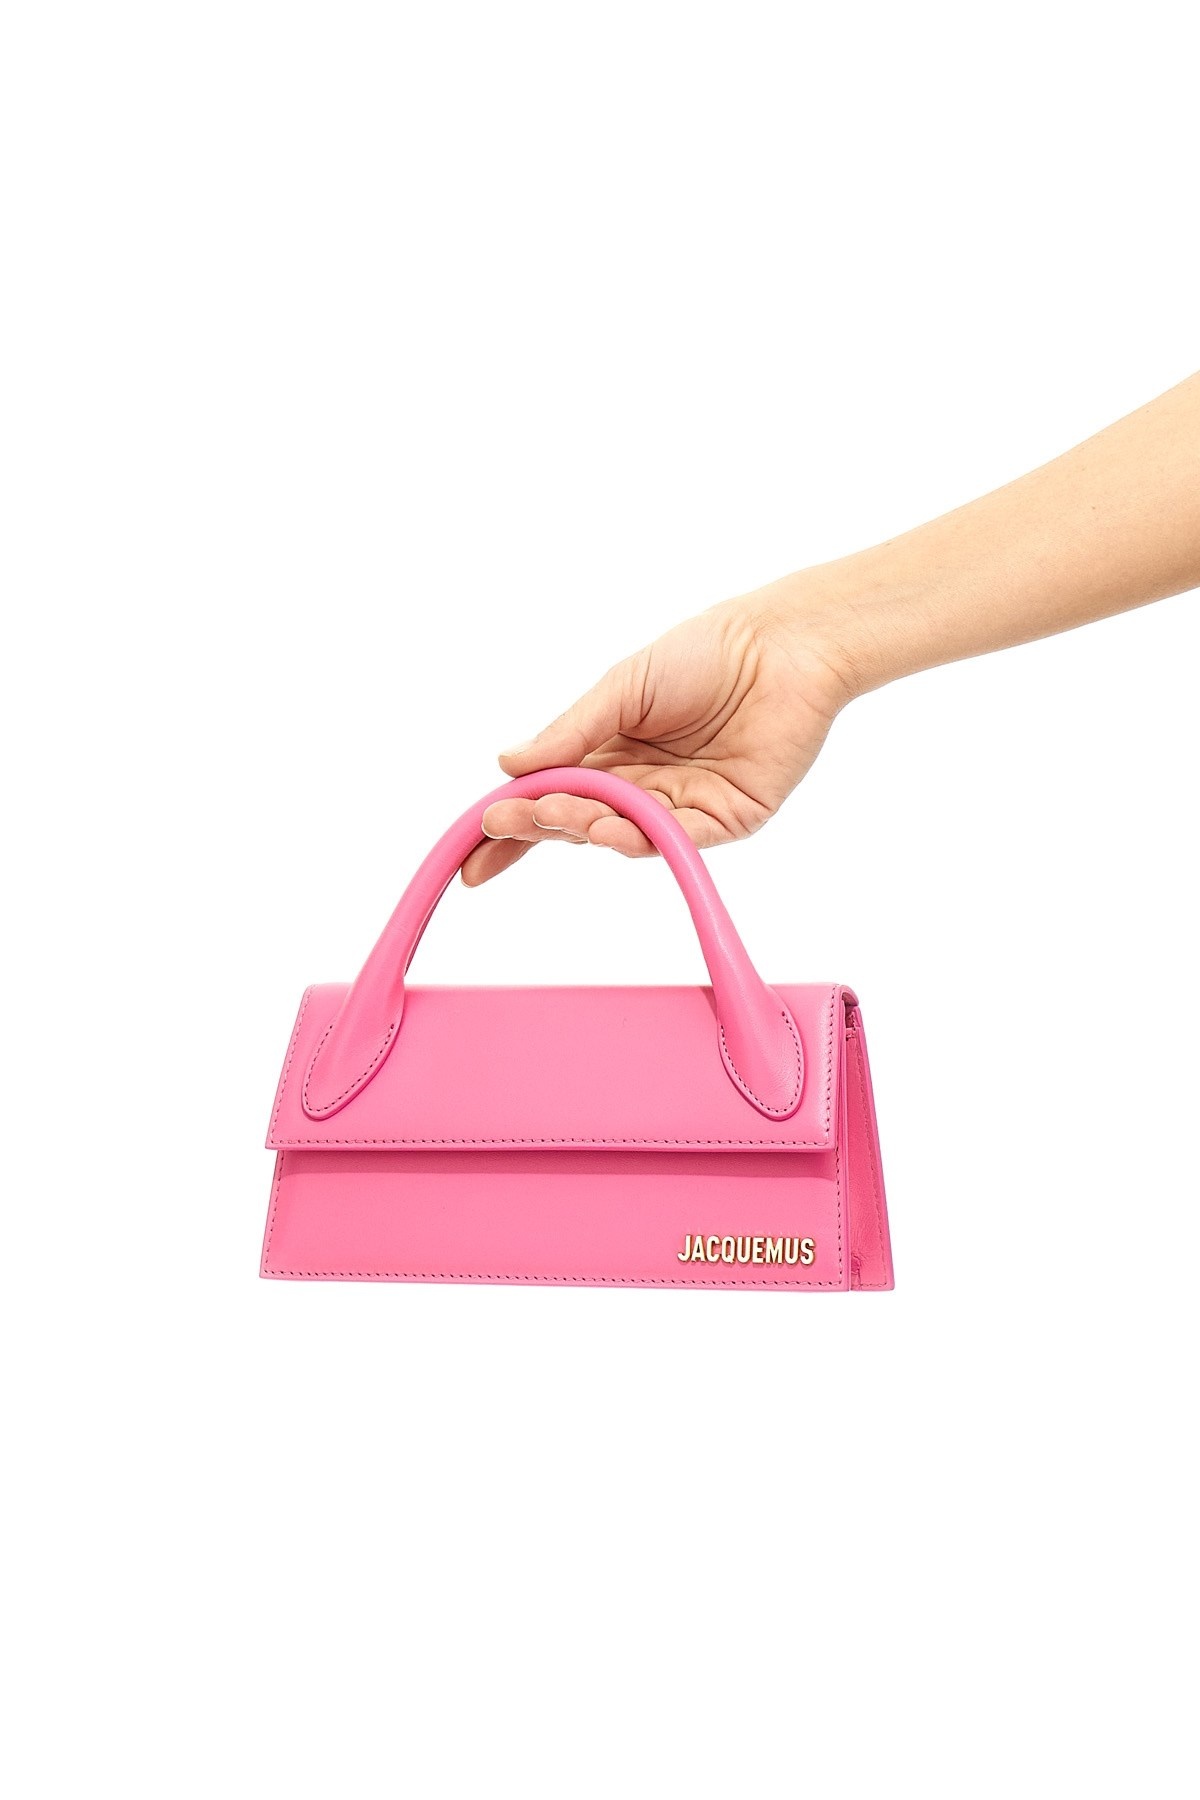 'Le Chiquito long' handbag - 2